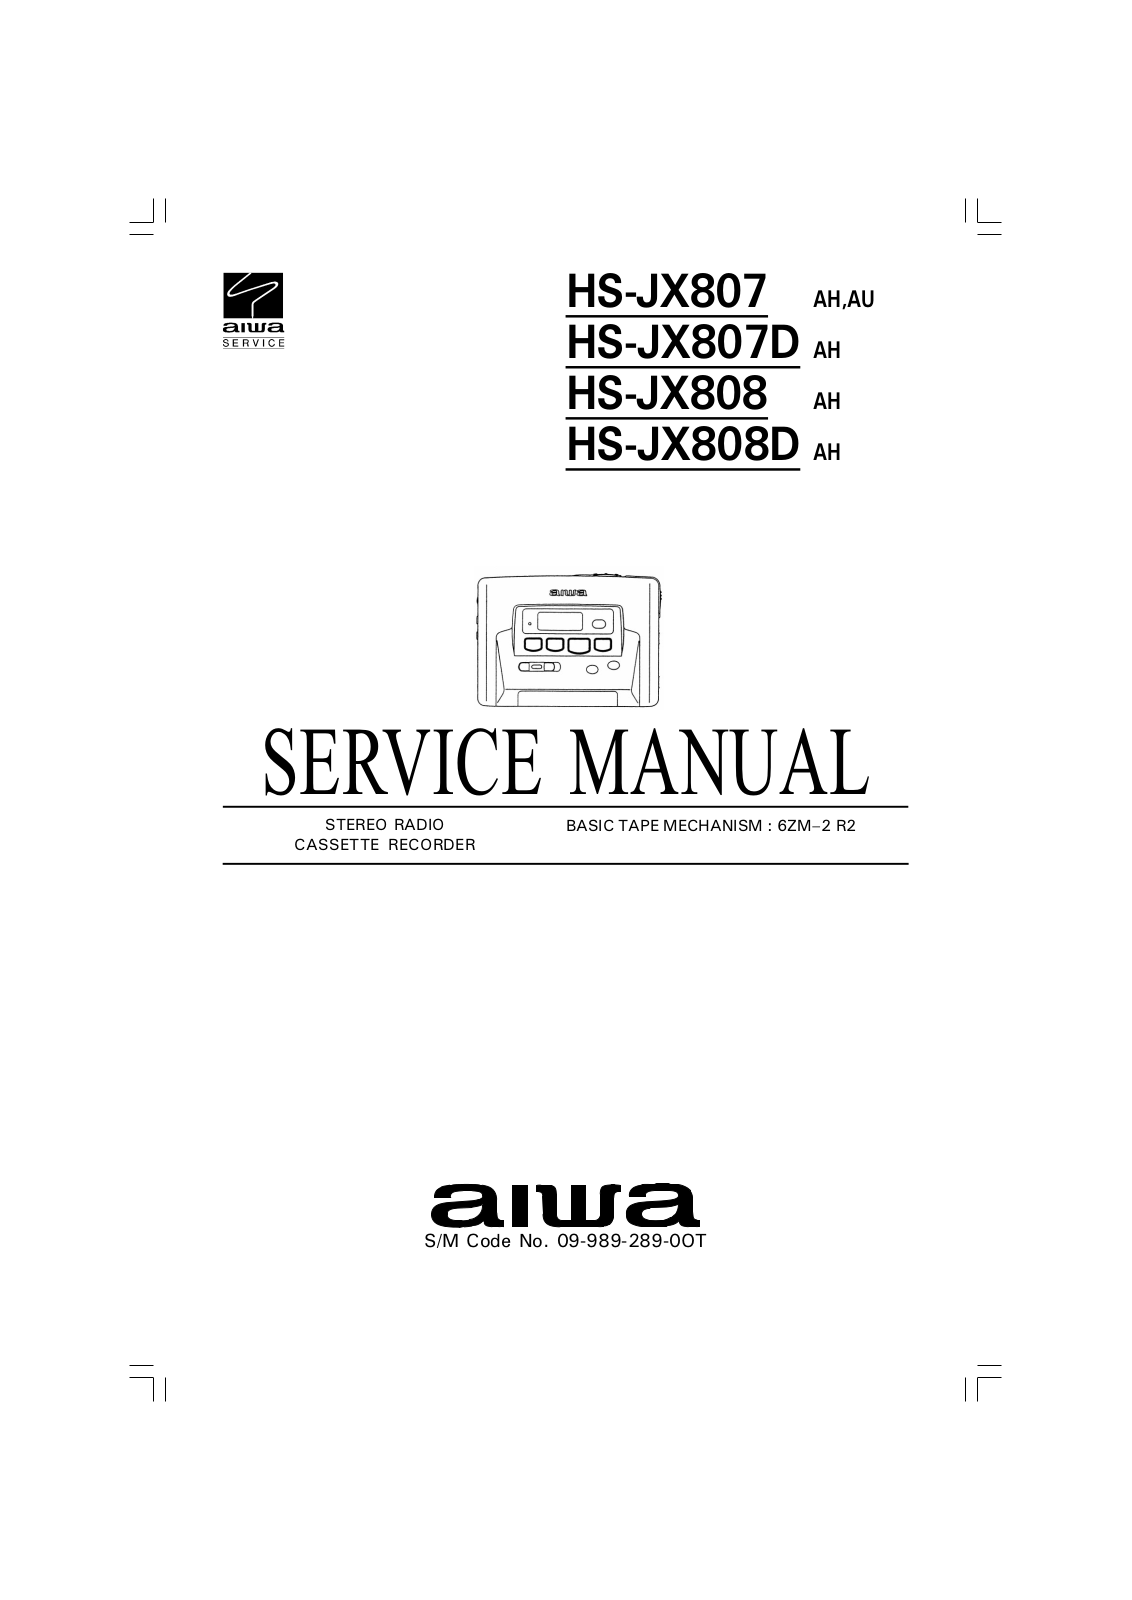 Aiwa HSJX-807, HSJX-807-D, HSJX-808-D, HSJX-808 Service manual